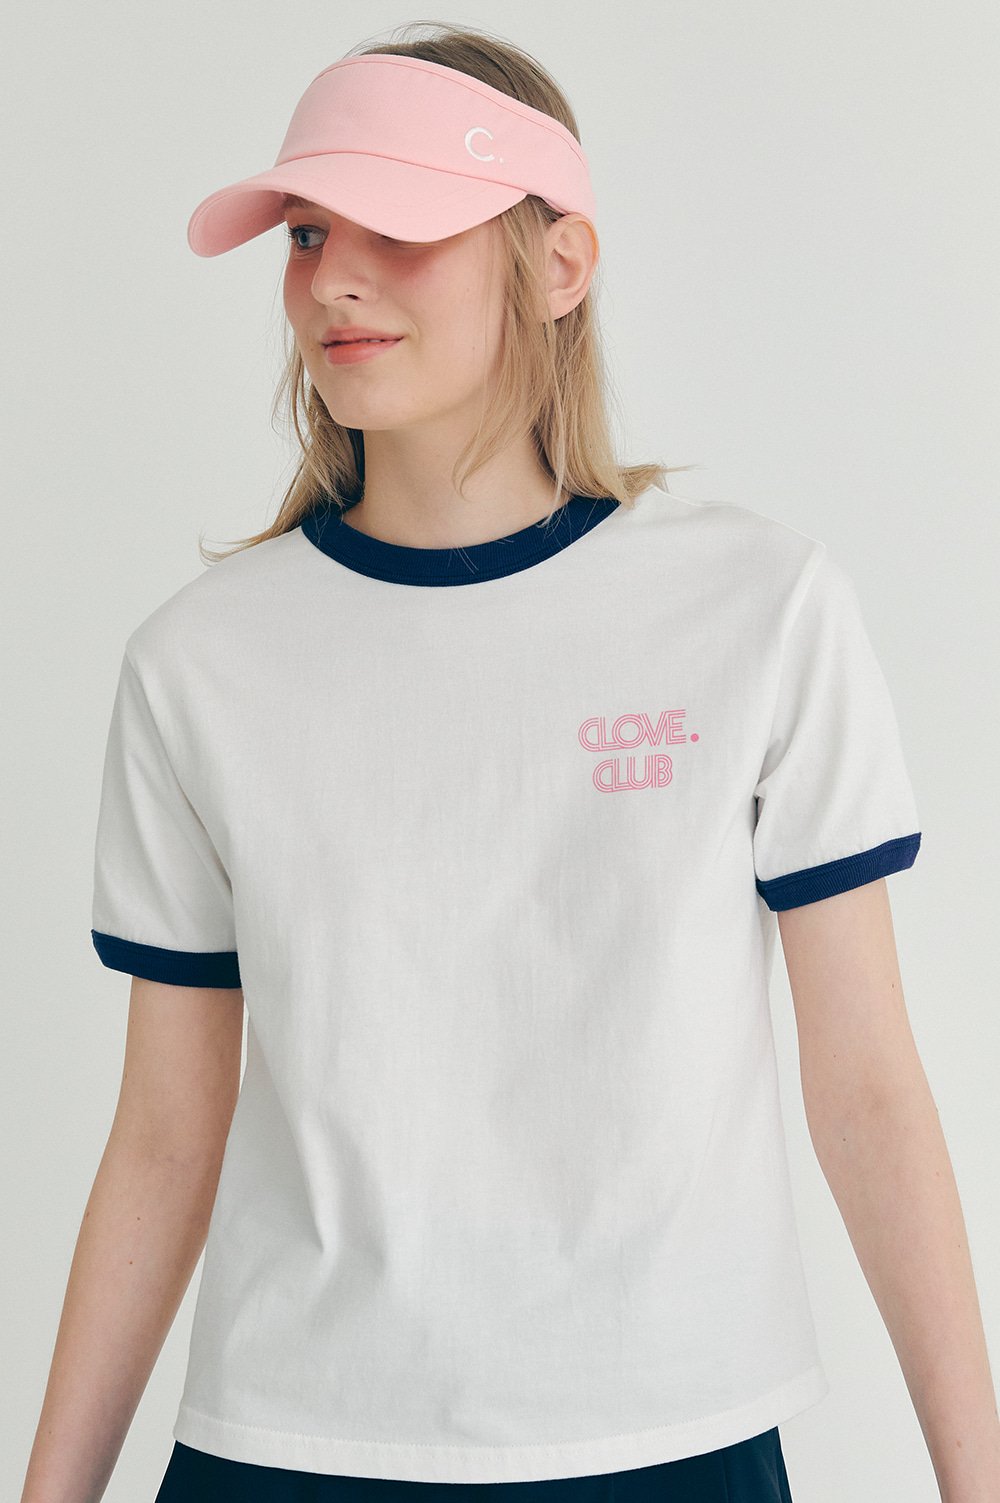 clove - [22SS clove] Point T-shirt (White)